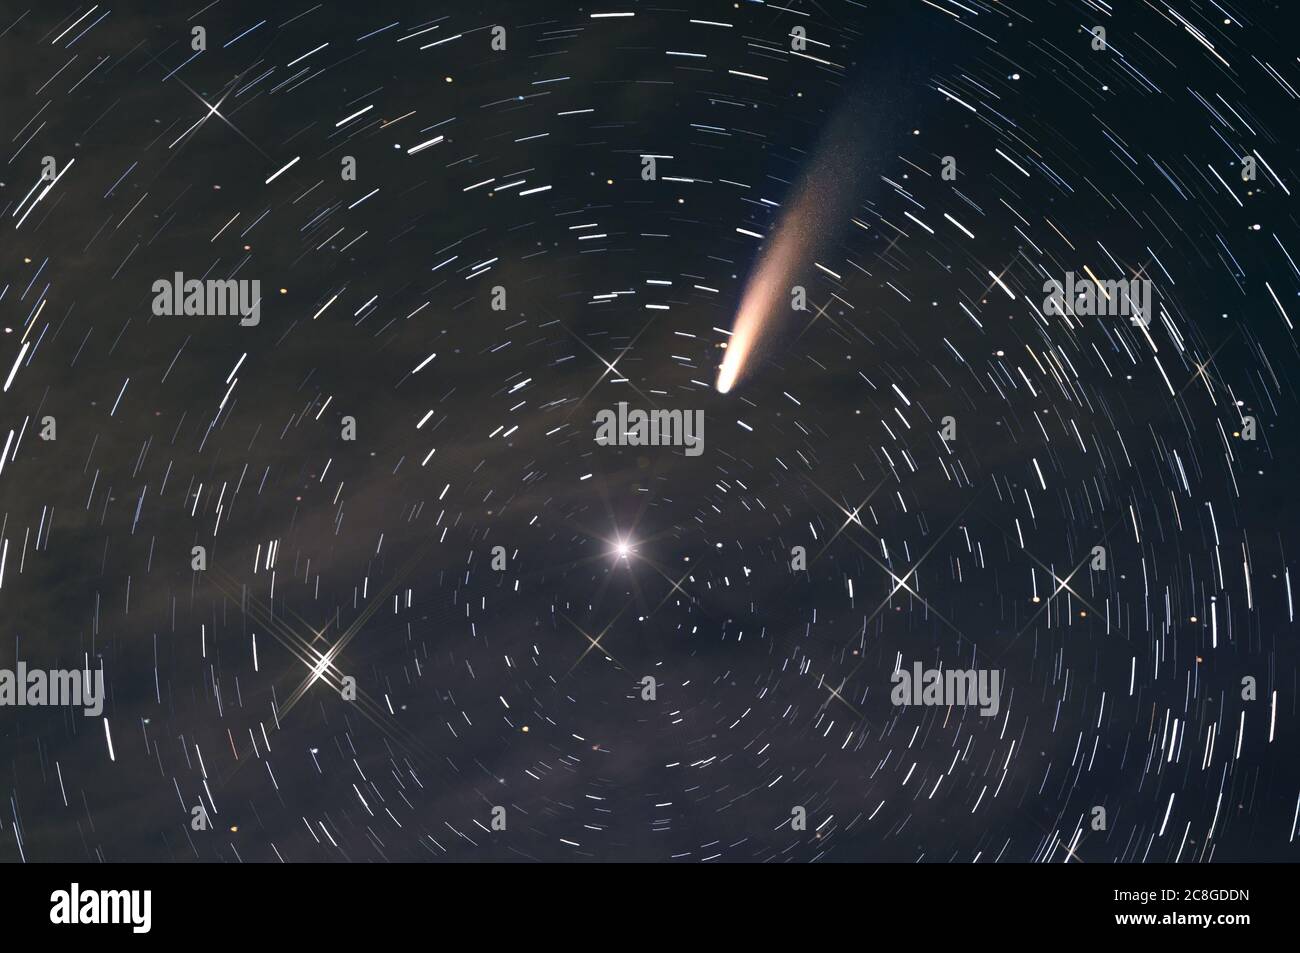 Abstrakter Raumhintergrund mit Spuren von Sternen, die sich um den Polarstern in Form von kreisförmigen Bahnen drehen, Sternen, Nebel und einem Kometen gegen den Stockfoto